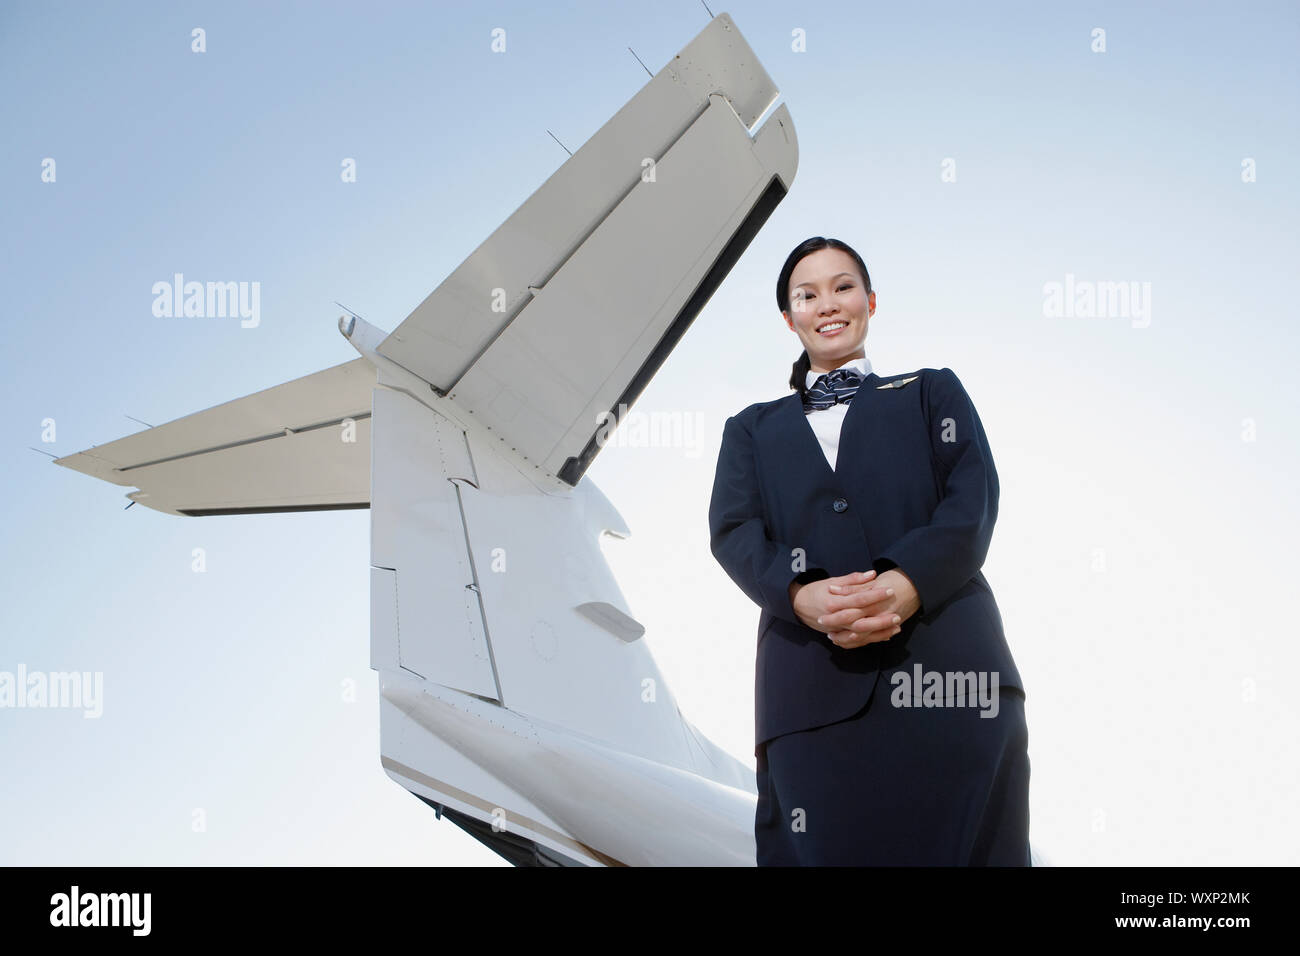 Первый человек на самолете. Самолет на одного человека. Женщины во главе авиакомпаний. Улыбающийся самолет иностранный. Фото как люди стоят в форме самолёта.